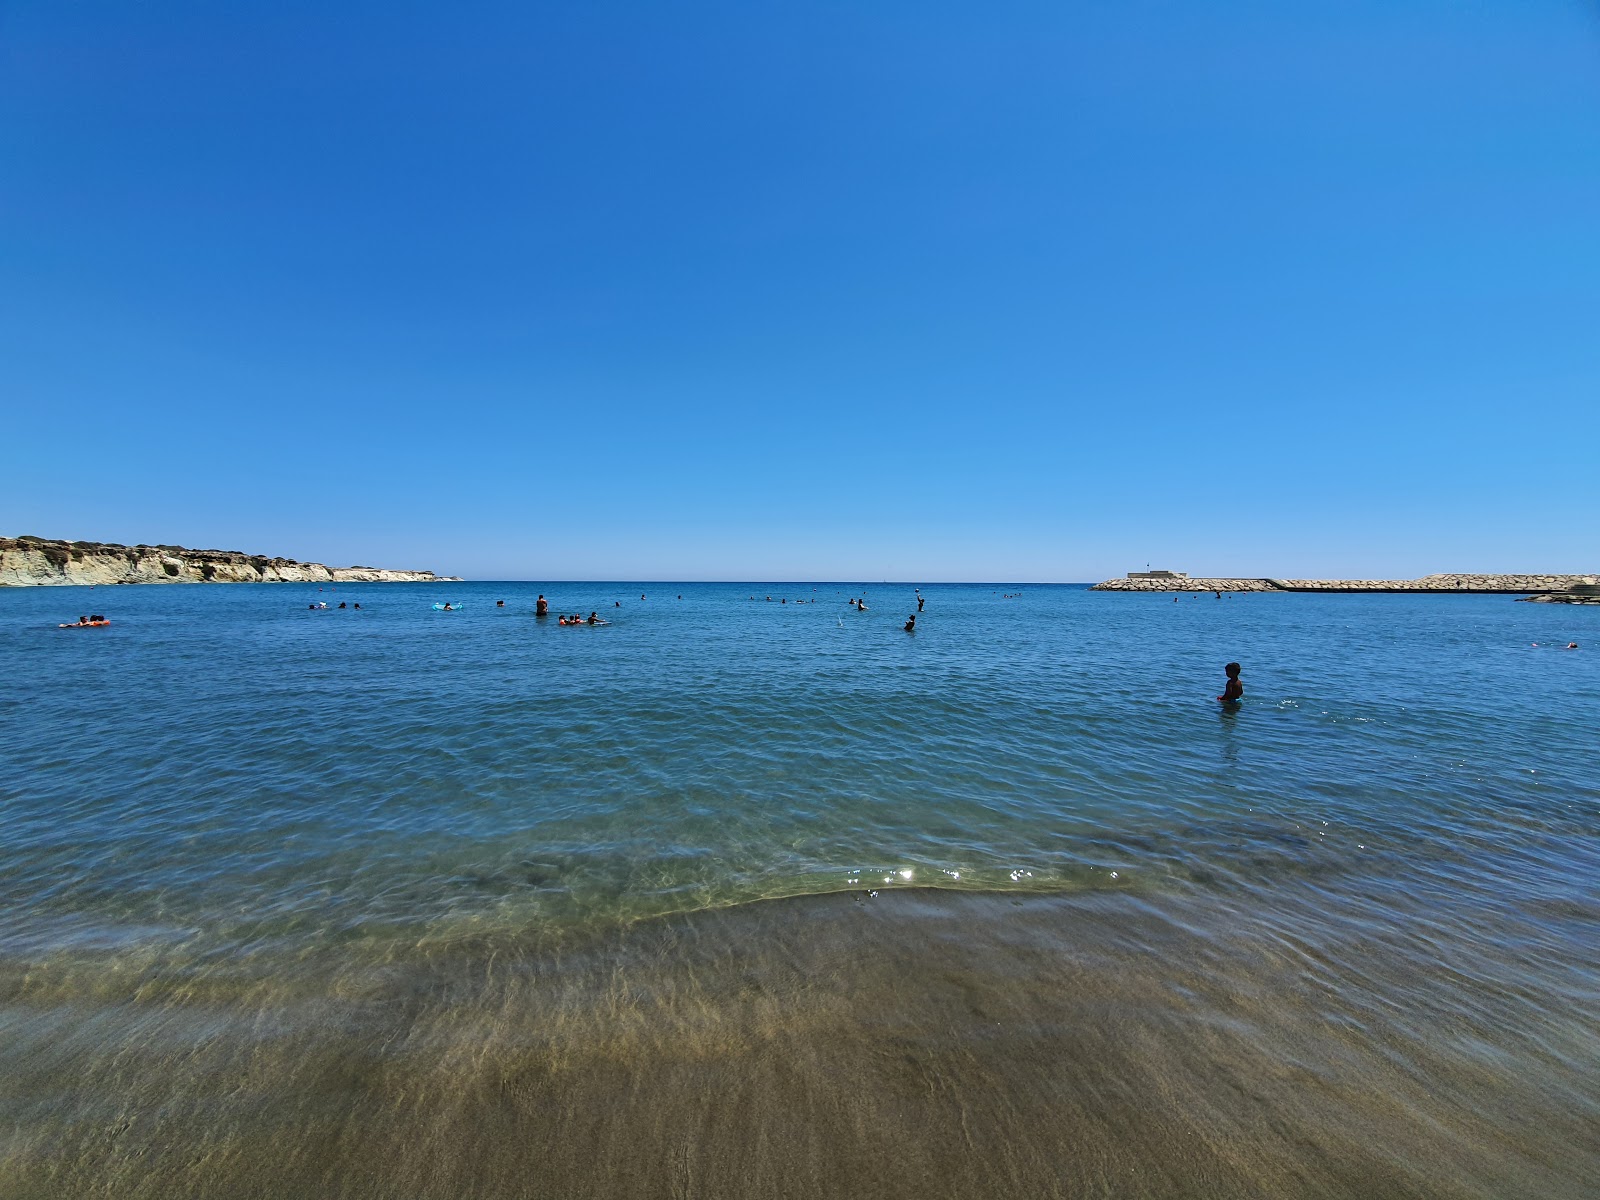 Alaminos beach'in fotoğrafı gri kum yüzey ile